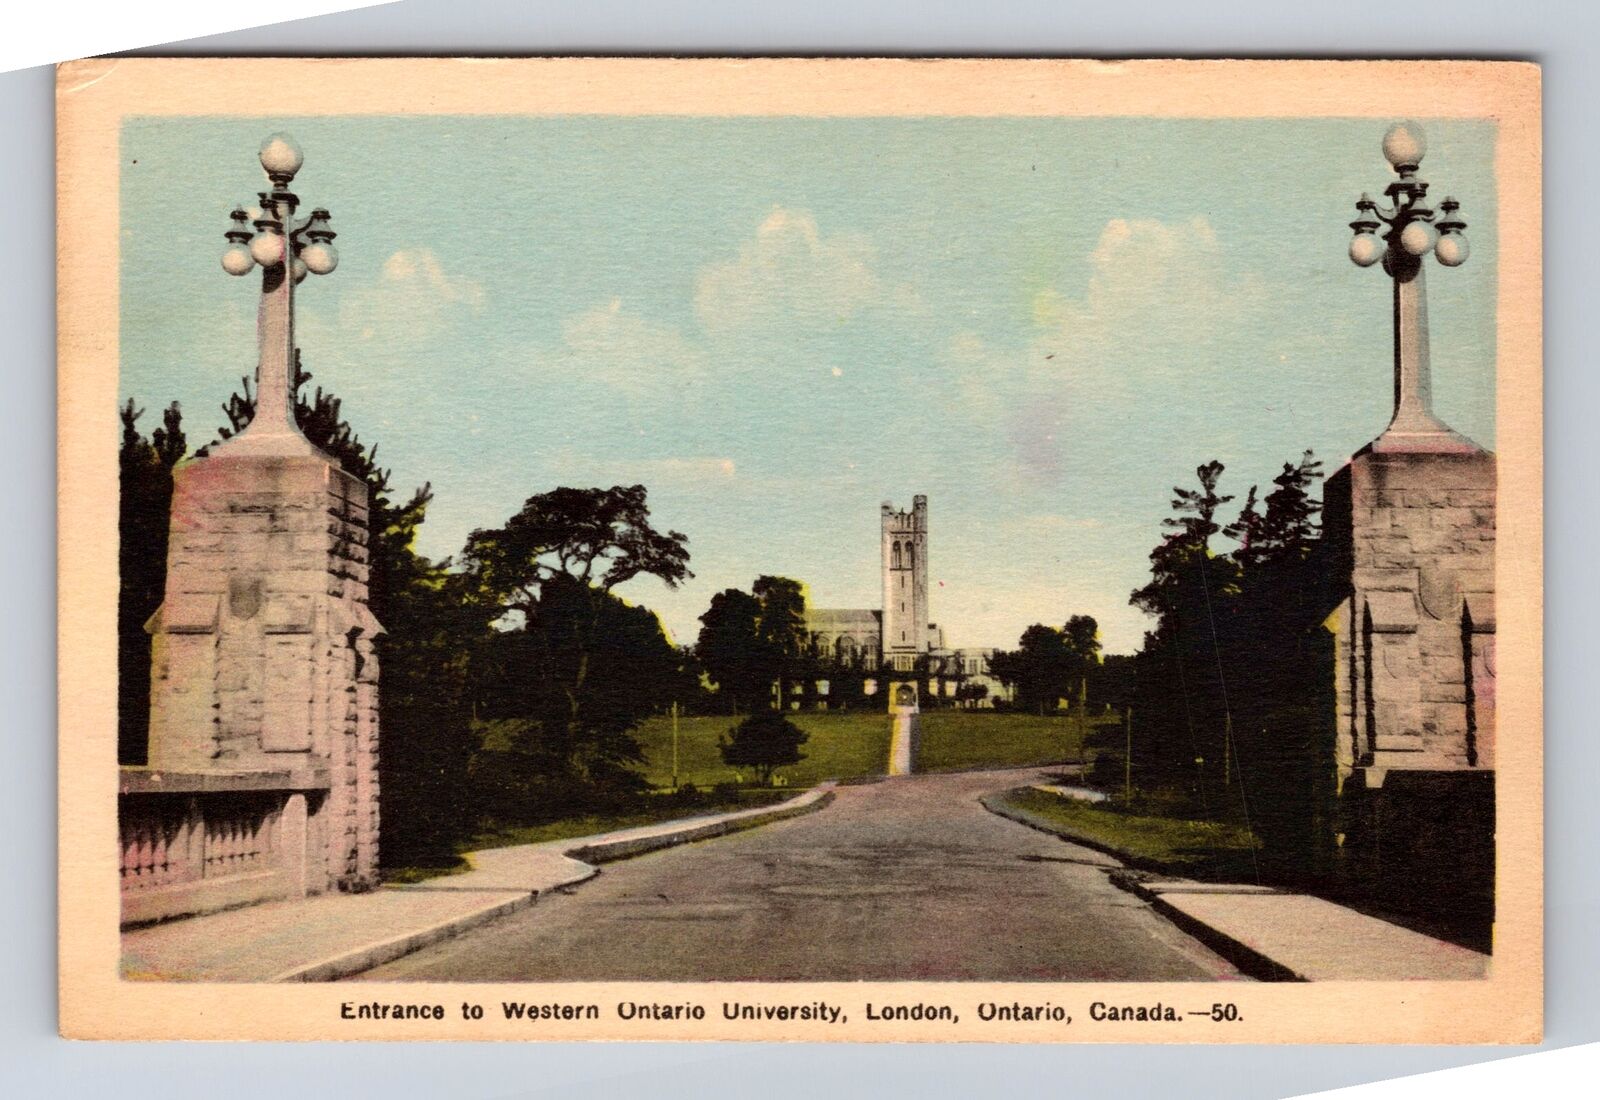 London Ontario Canada, Entrance To Western Ontario University, Vintage Postcard